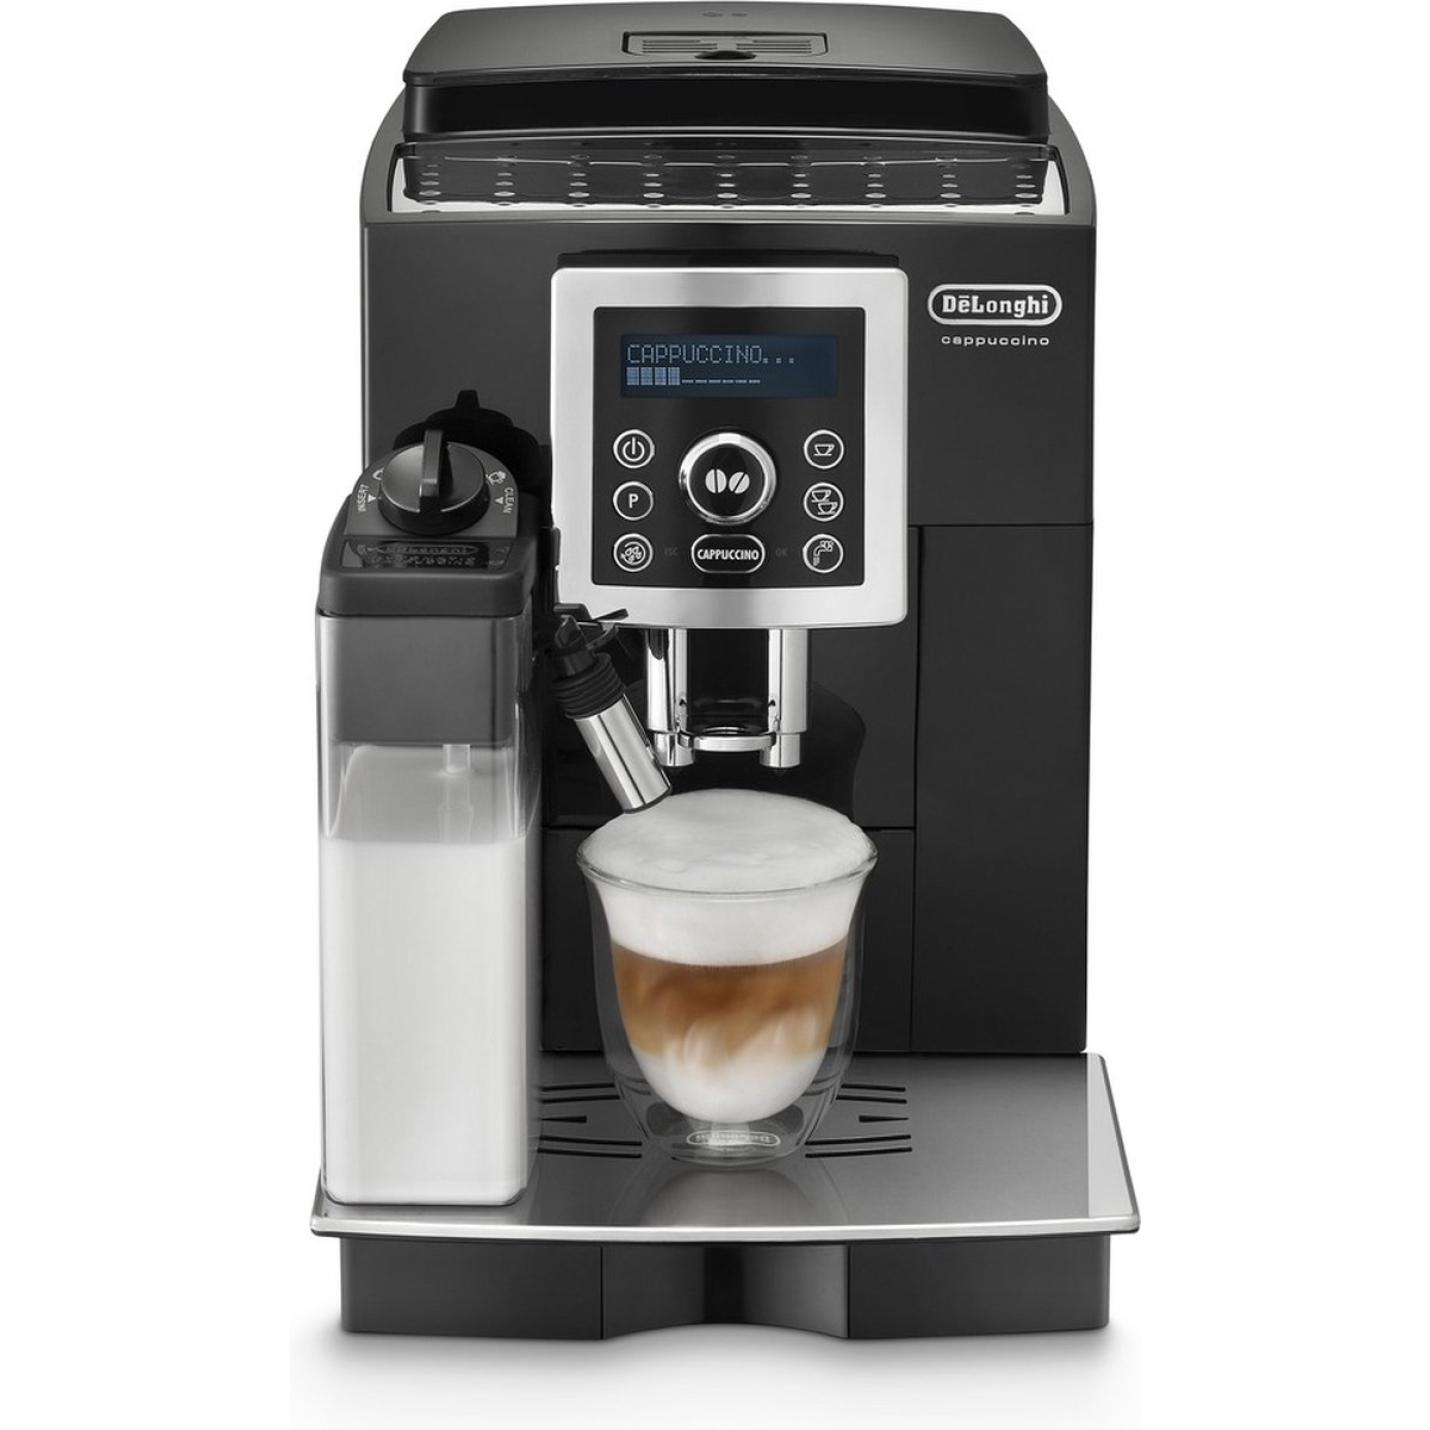 Expliciet zege haakje De'Longhi ECAM 23.460.B - Volautomatische espressomachine - Zwart Retail XL  | Webshoplocatie.nl